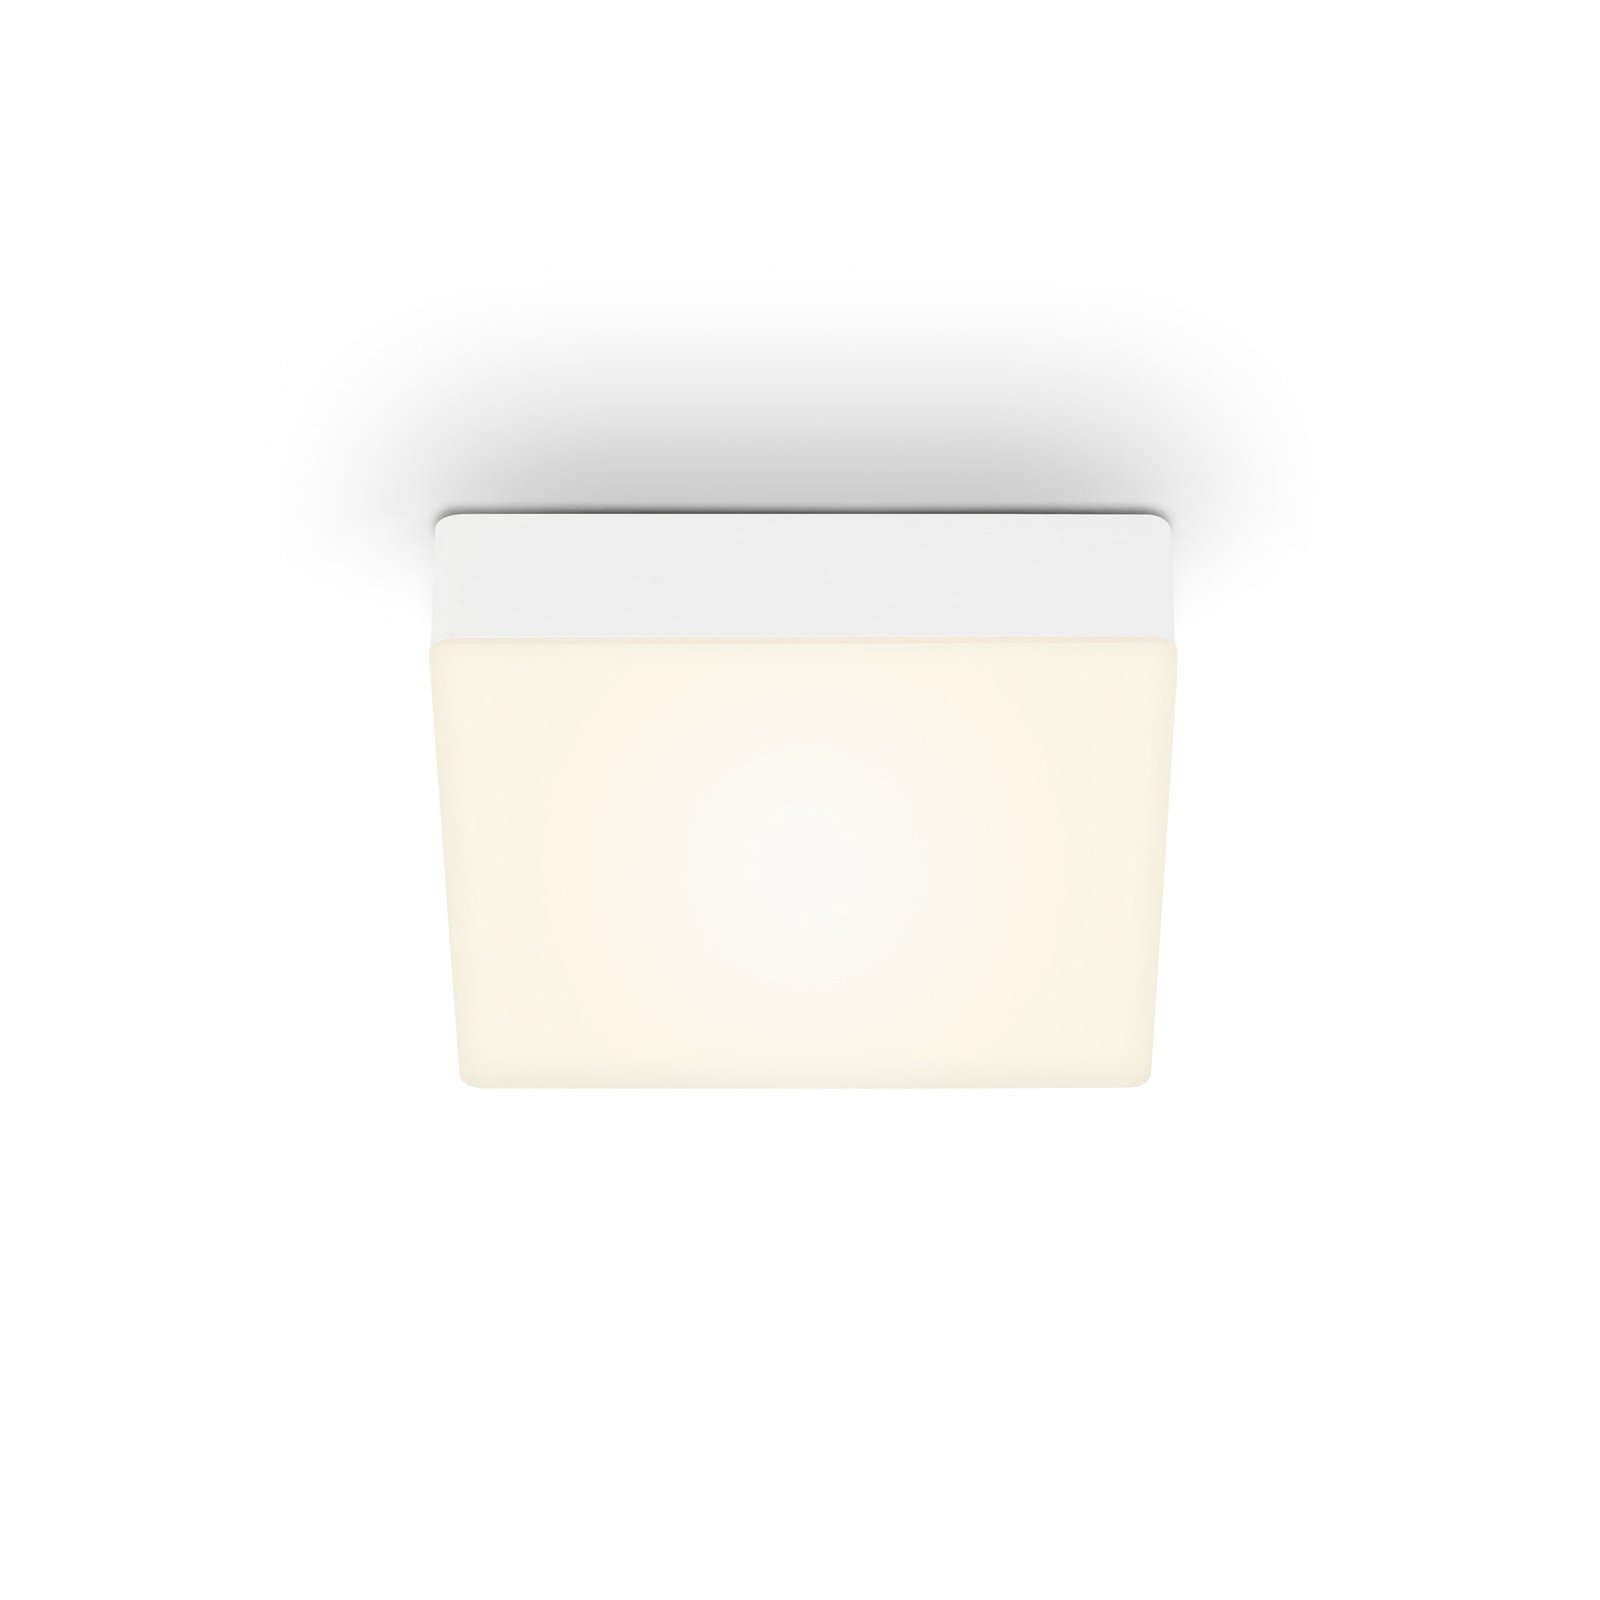 LED-Deckenleuchte Flame, 15,7 x 15,7 cm, weiß